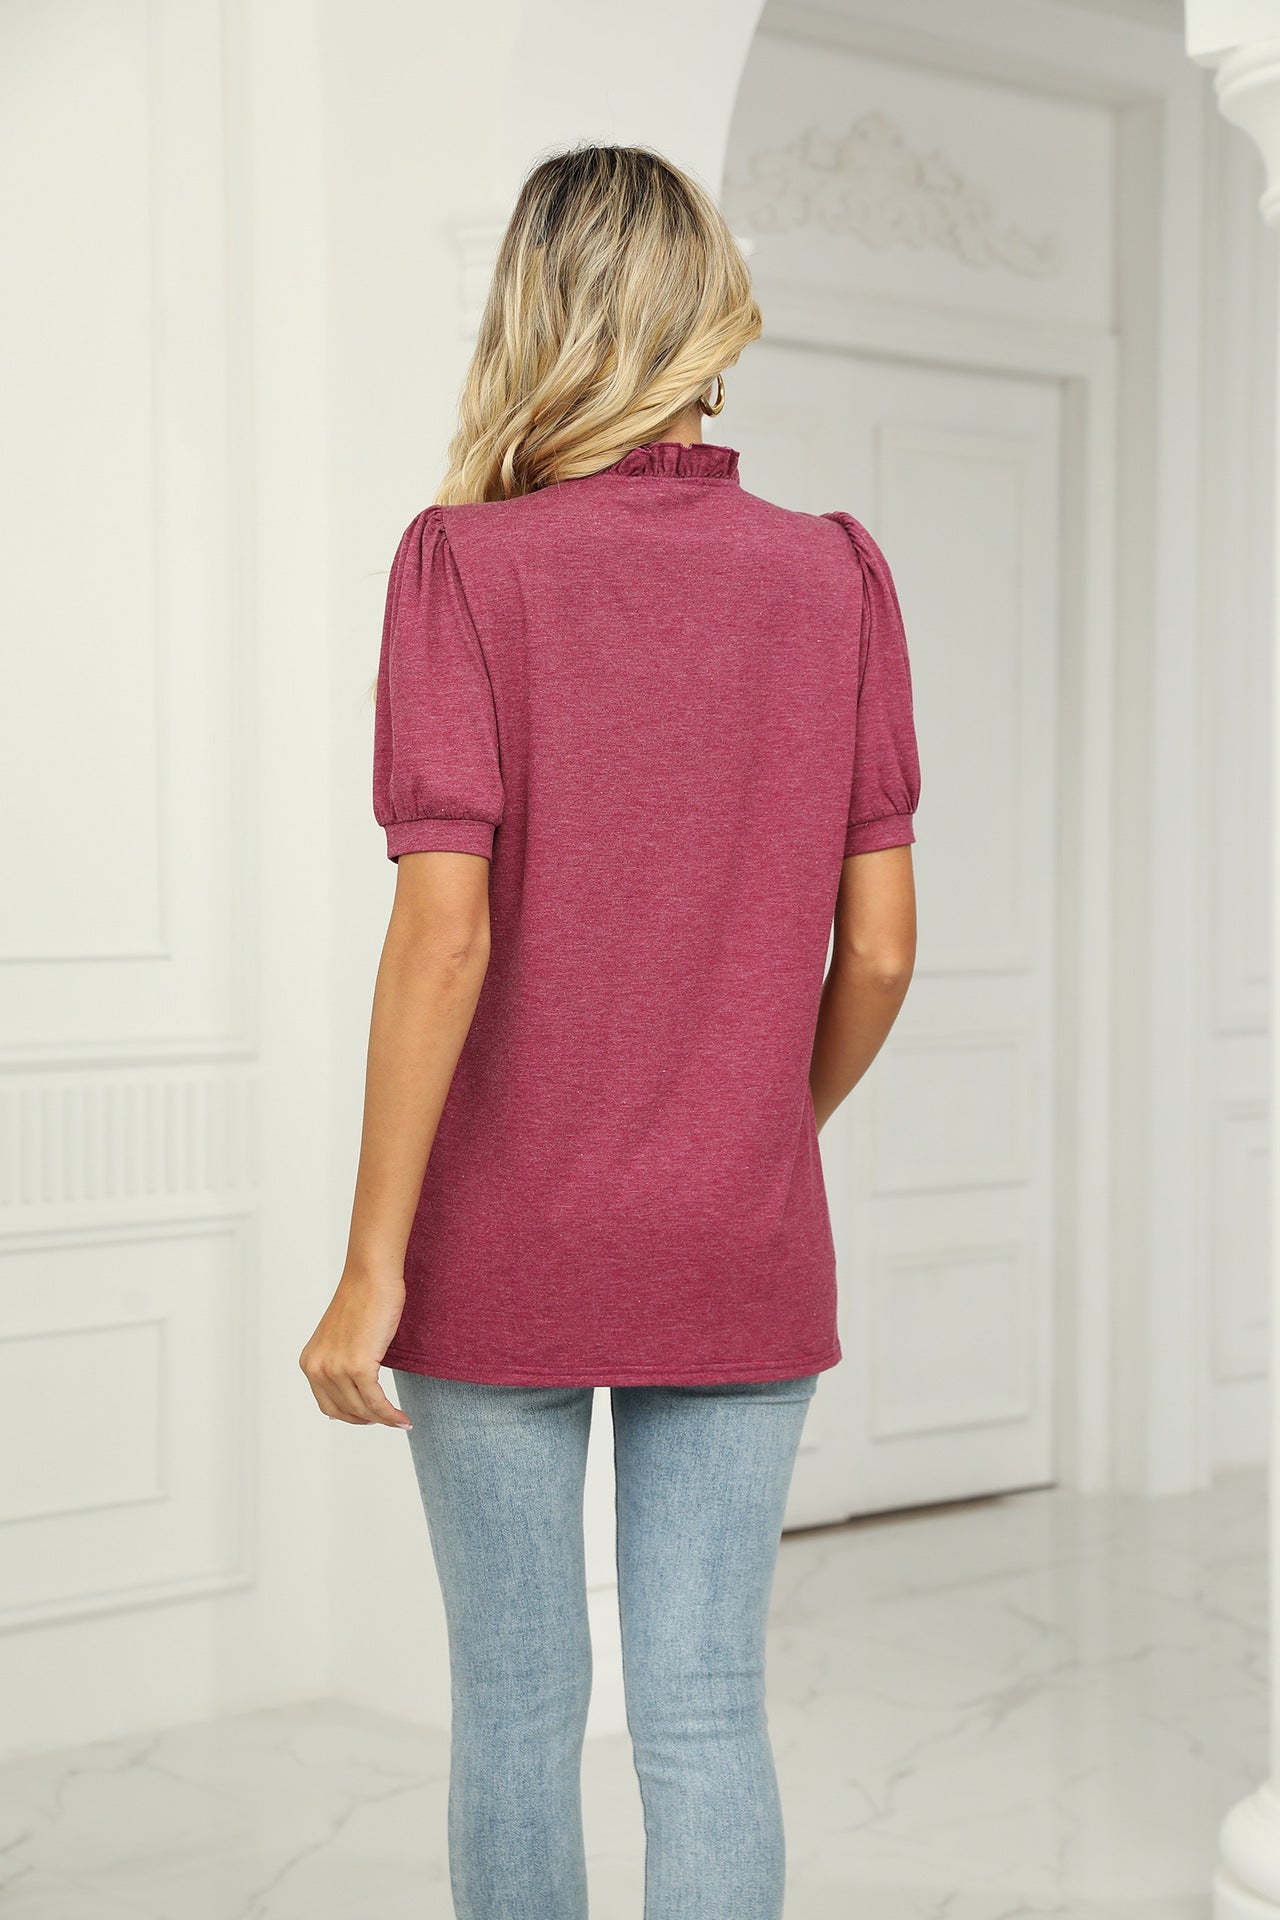 Summer Short Sleeves Women T Shirts-Shirts & Tops-Free Shipping at meselling99